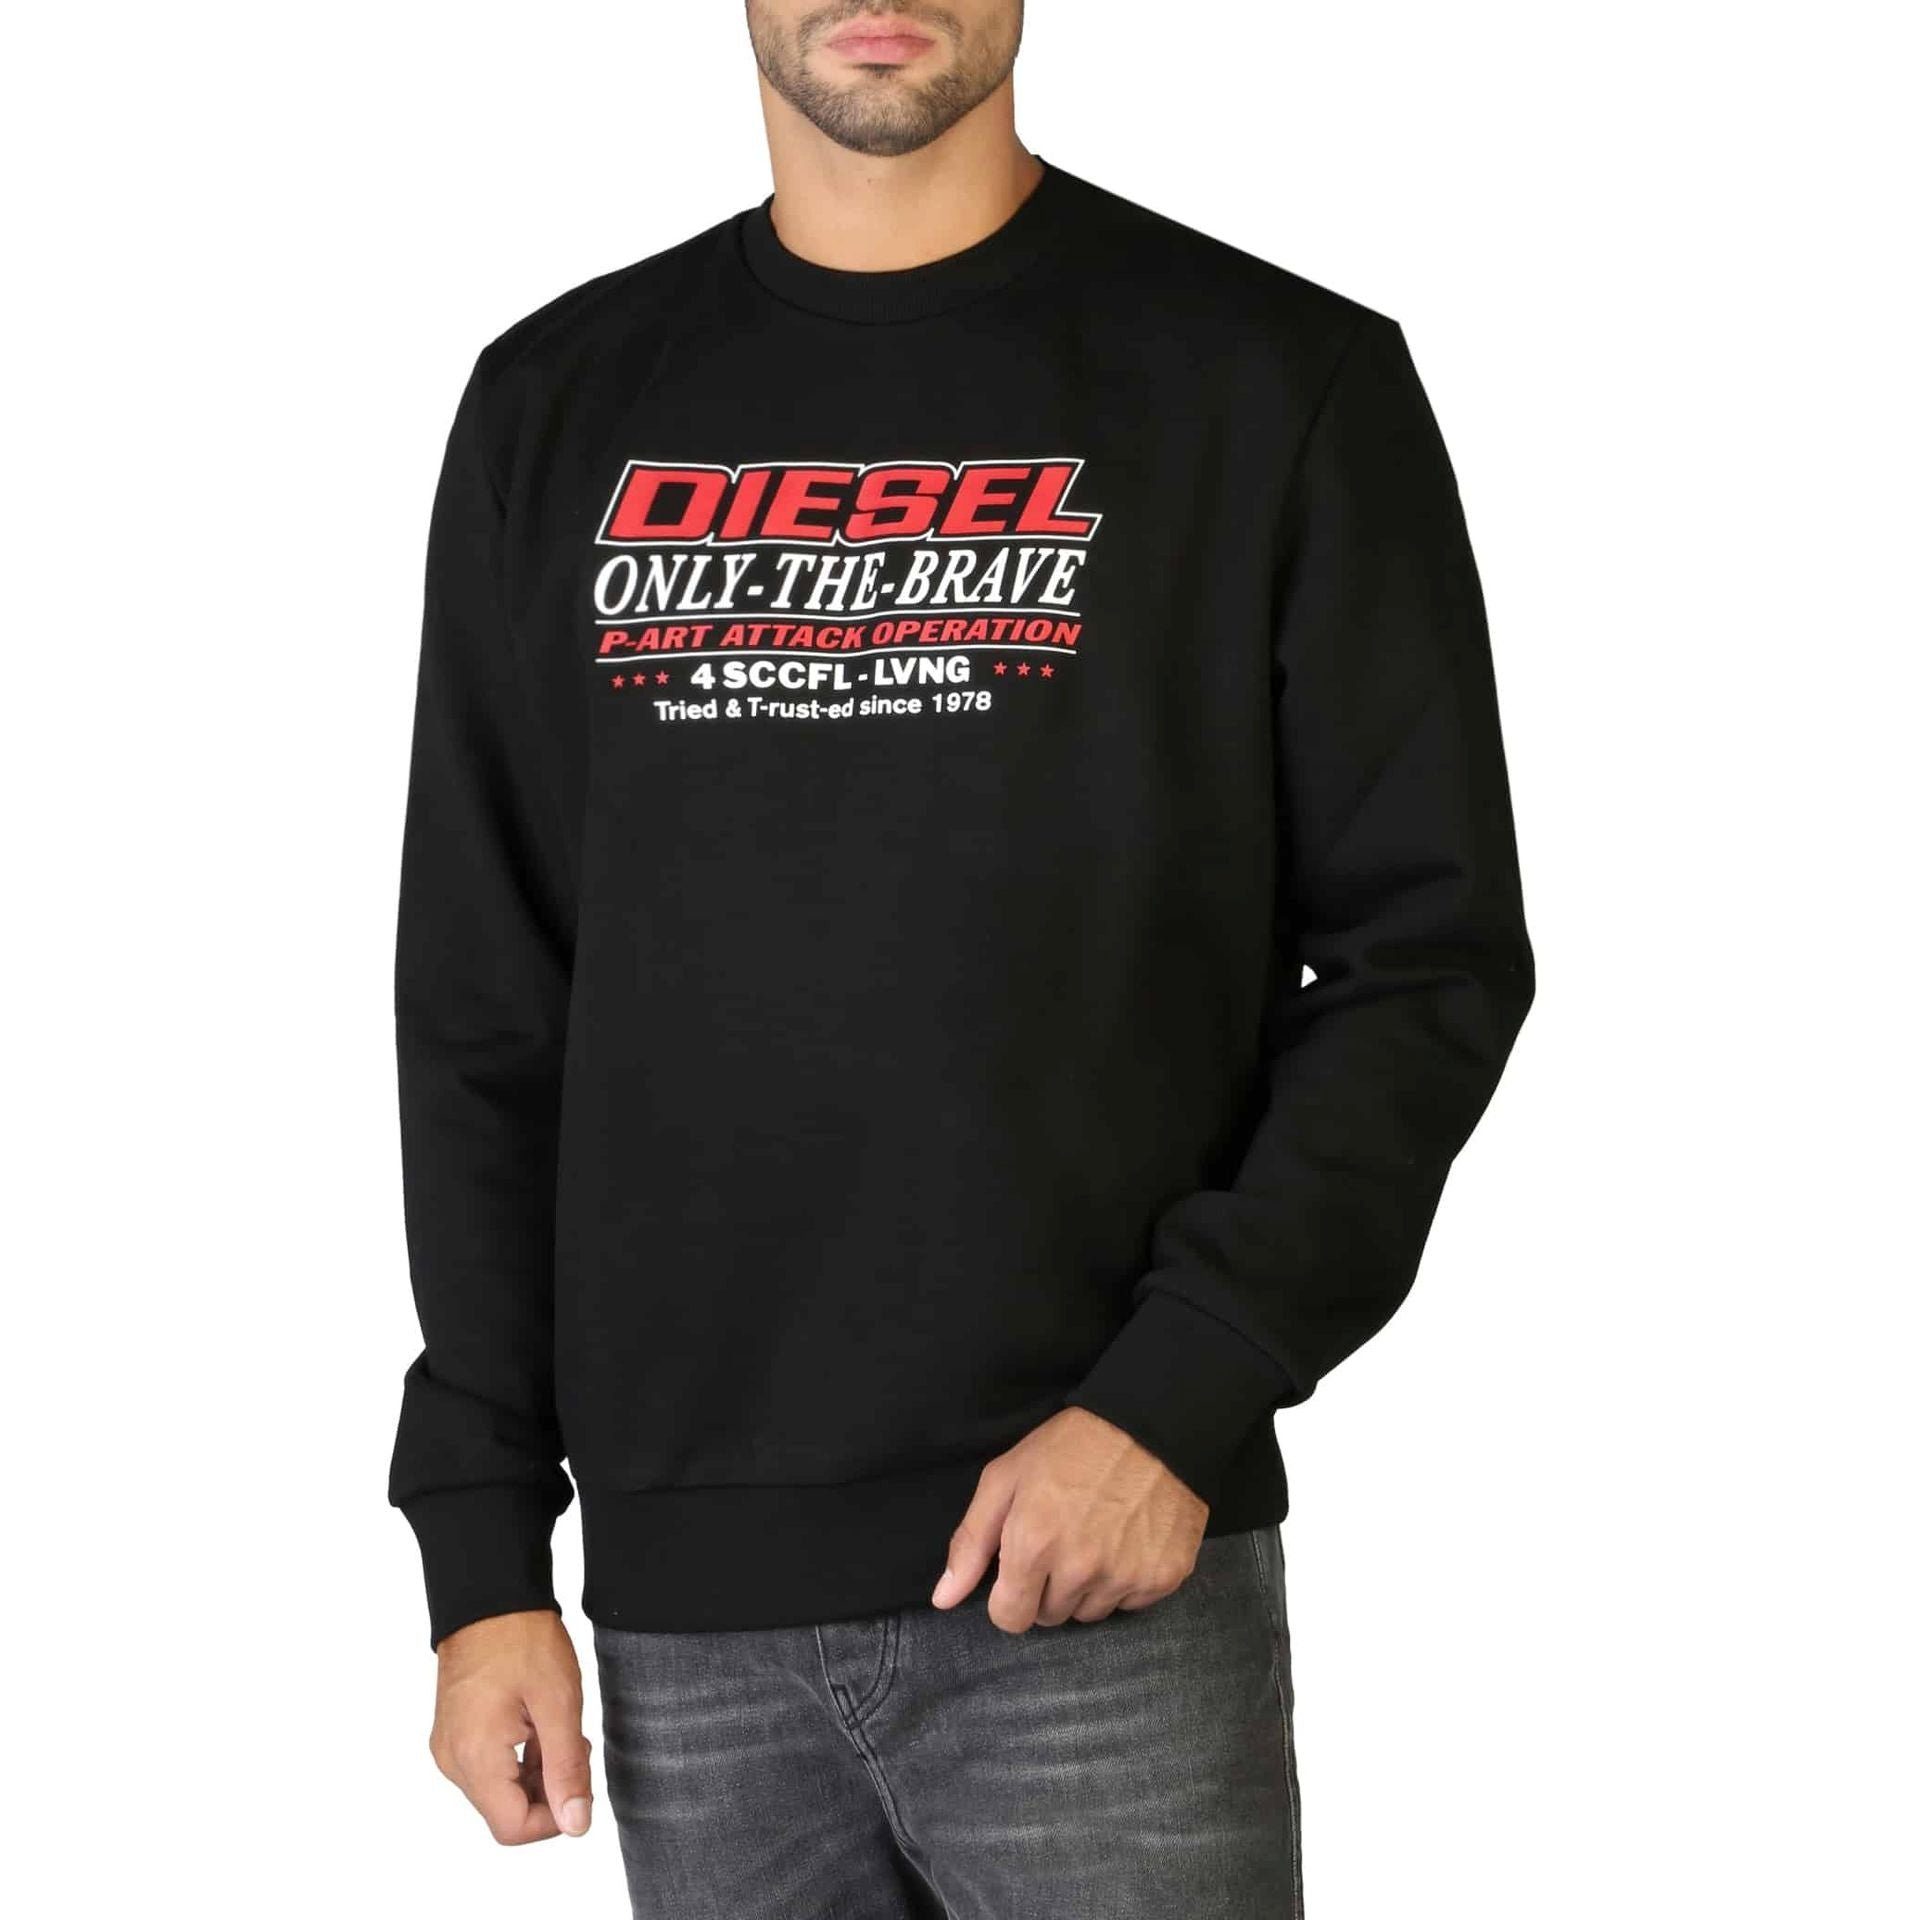 und Diesel Komfort Sweatshirt Herren Sweatshirt neues Schwarz Diesel wartet! Ihr Stil - Sweatshirt mit Rundhalsausschnitt, Diesel